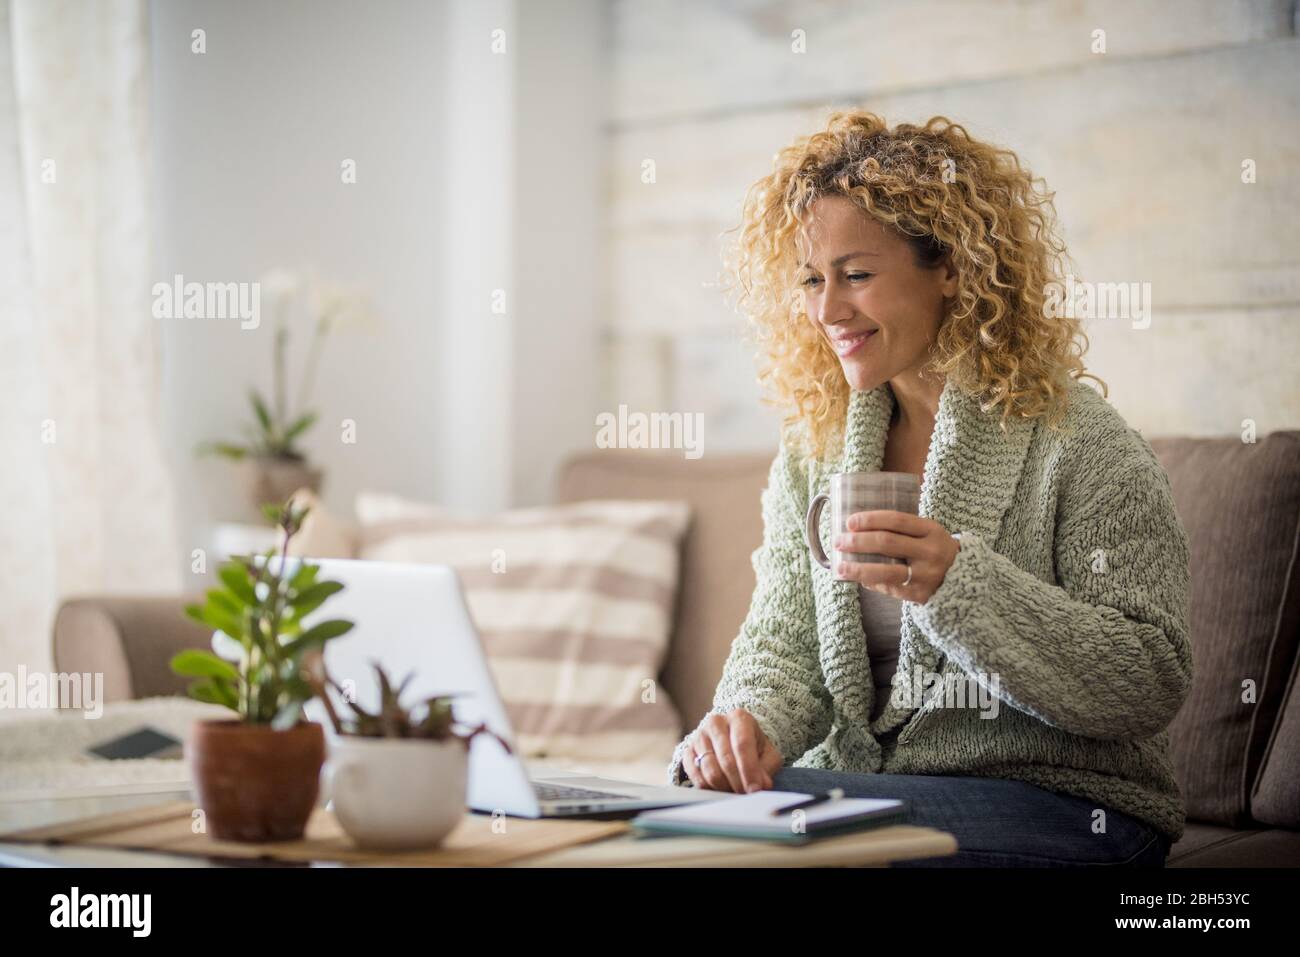 Femme souriante tenant un verre sur un ordinateur portable Banque D'Images